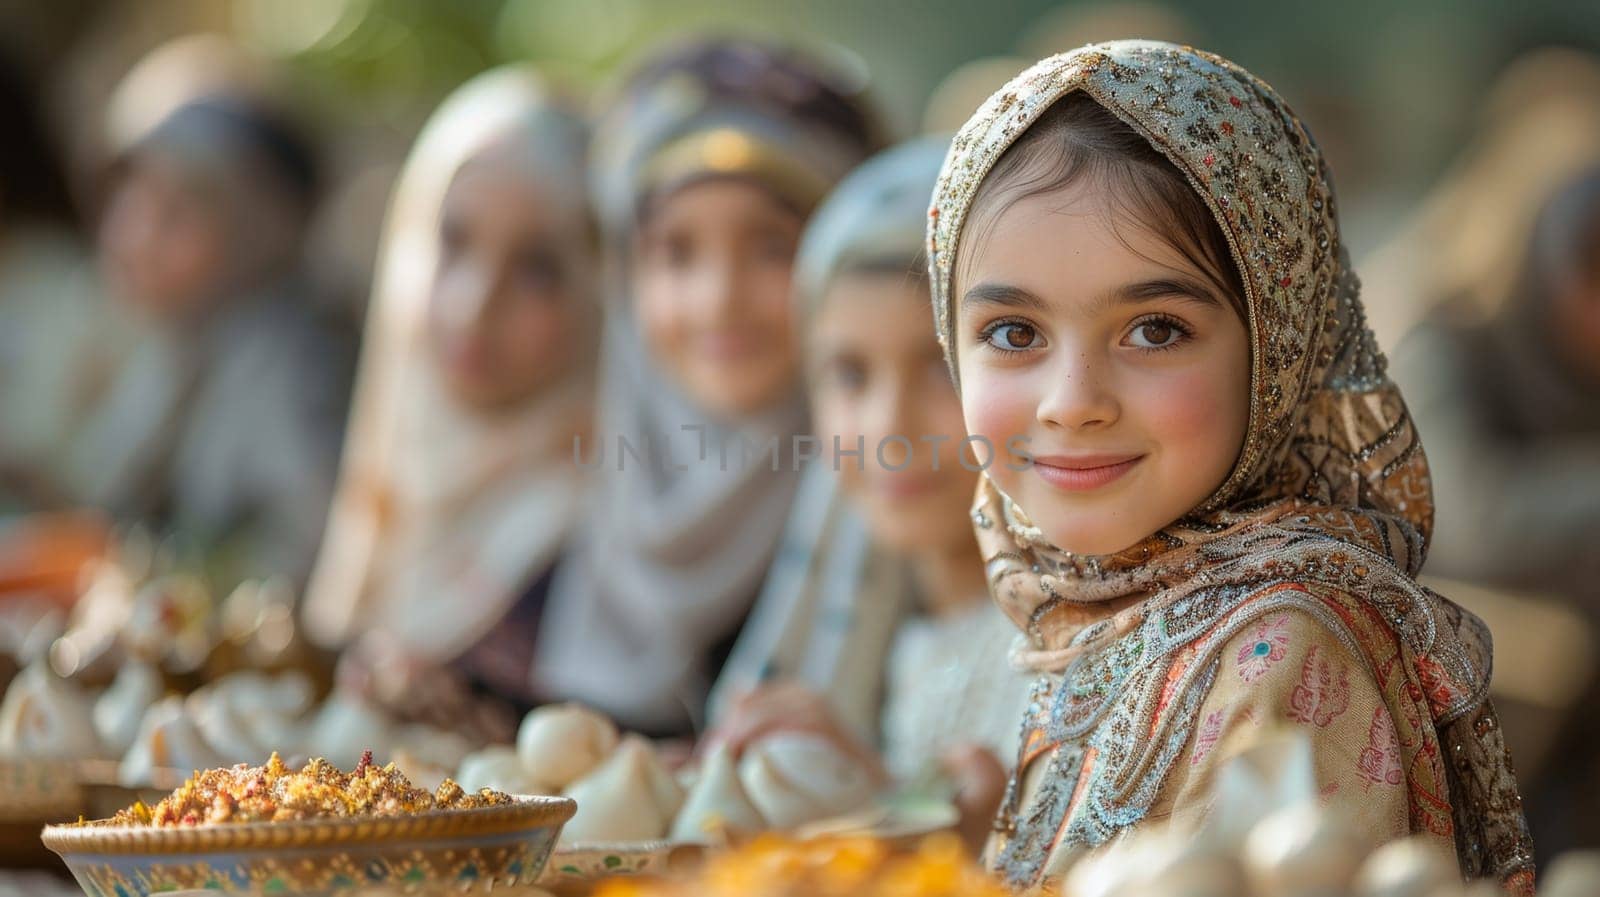 Young Muslim women on Eid al-Adha holiday by Lobachad